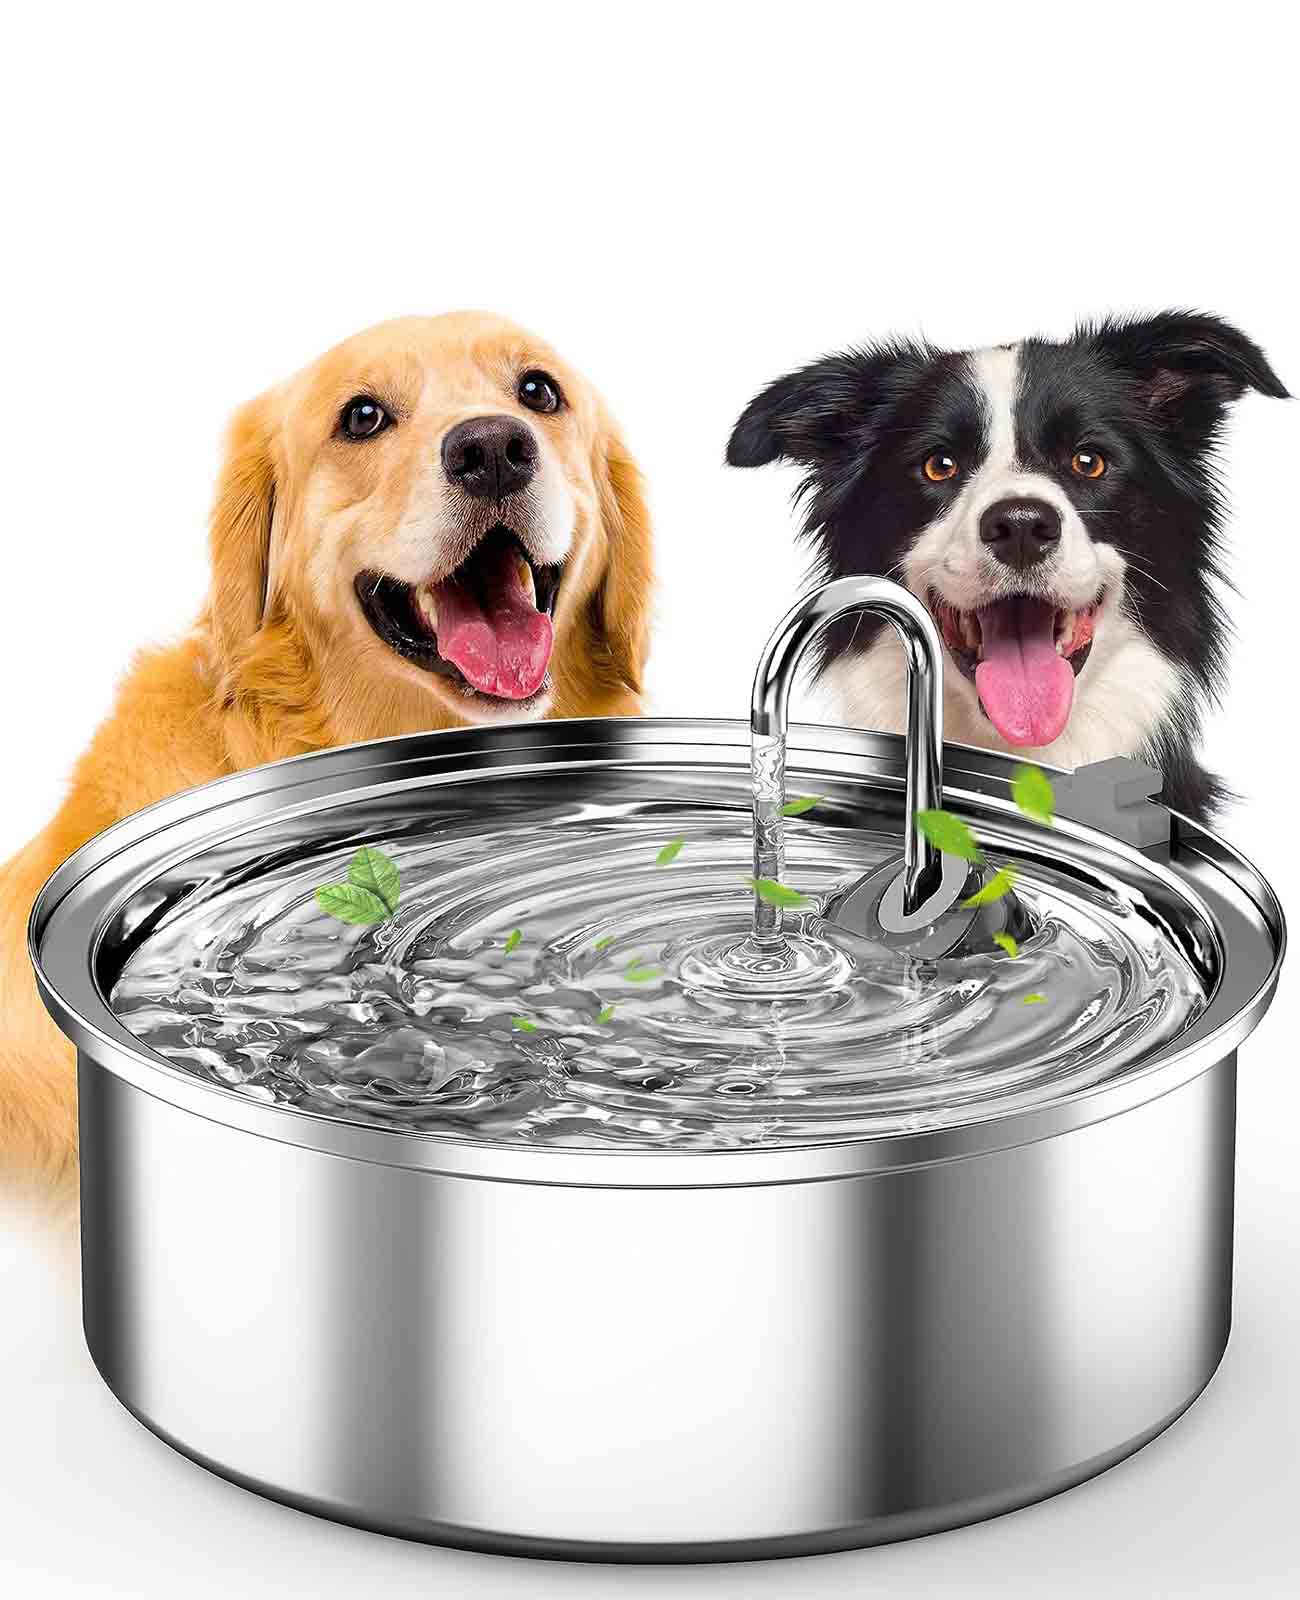 Oneisall Fontaine d'eau pour chien pour grands chiens, 7L/230oz/1.8G Fontaine pour chien en acier inoxydable super silencieuse avec triple filtration et pompe intelligente